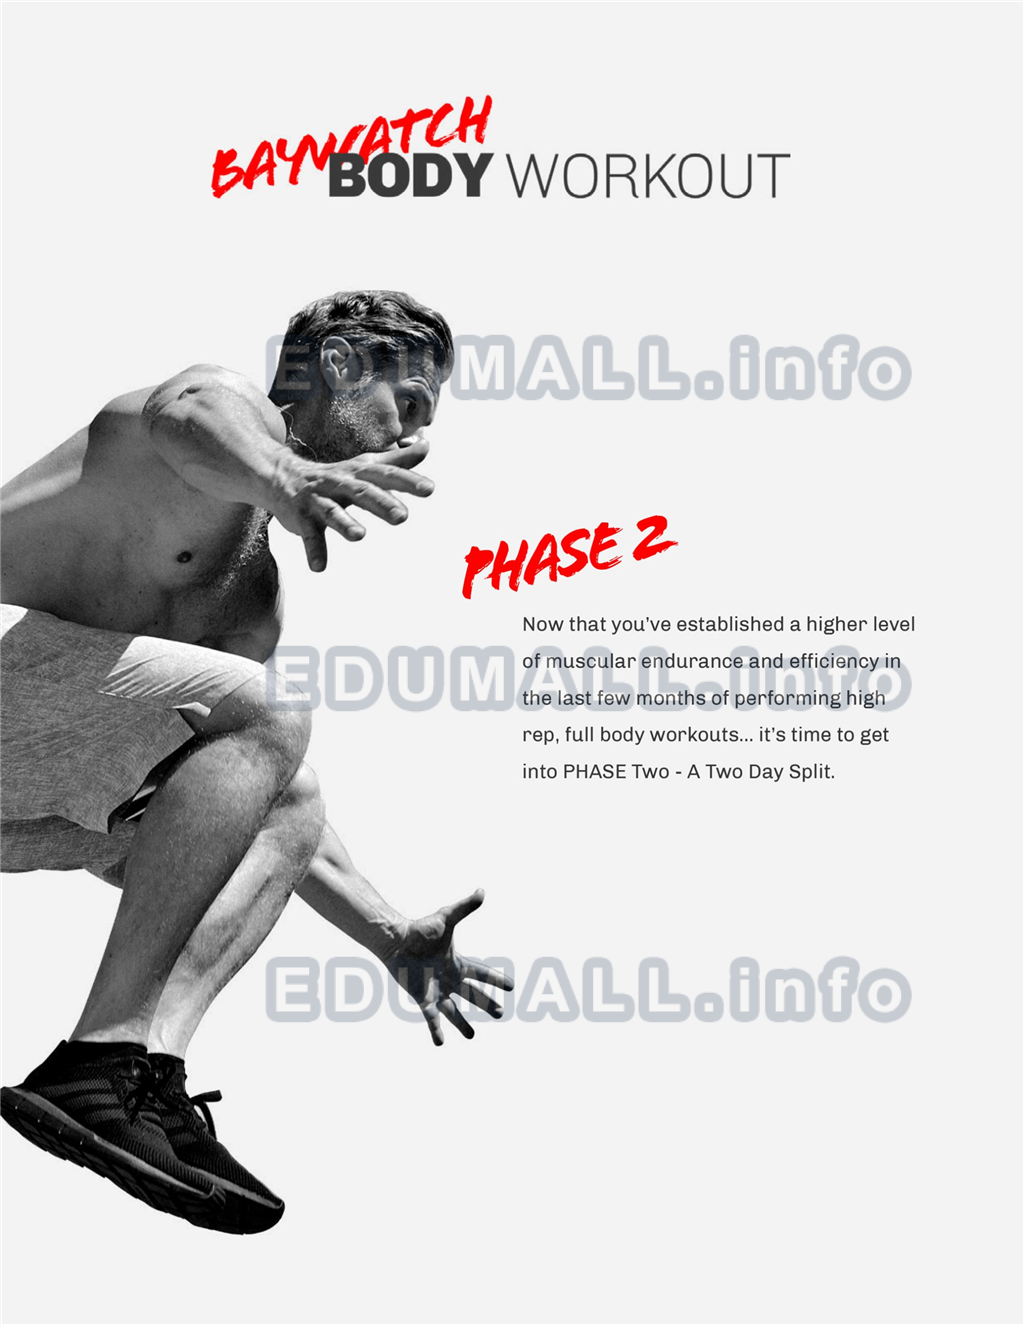 Patrick Murphy - Baywatch Body Workout Phase 2